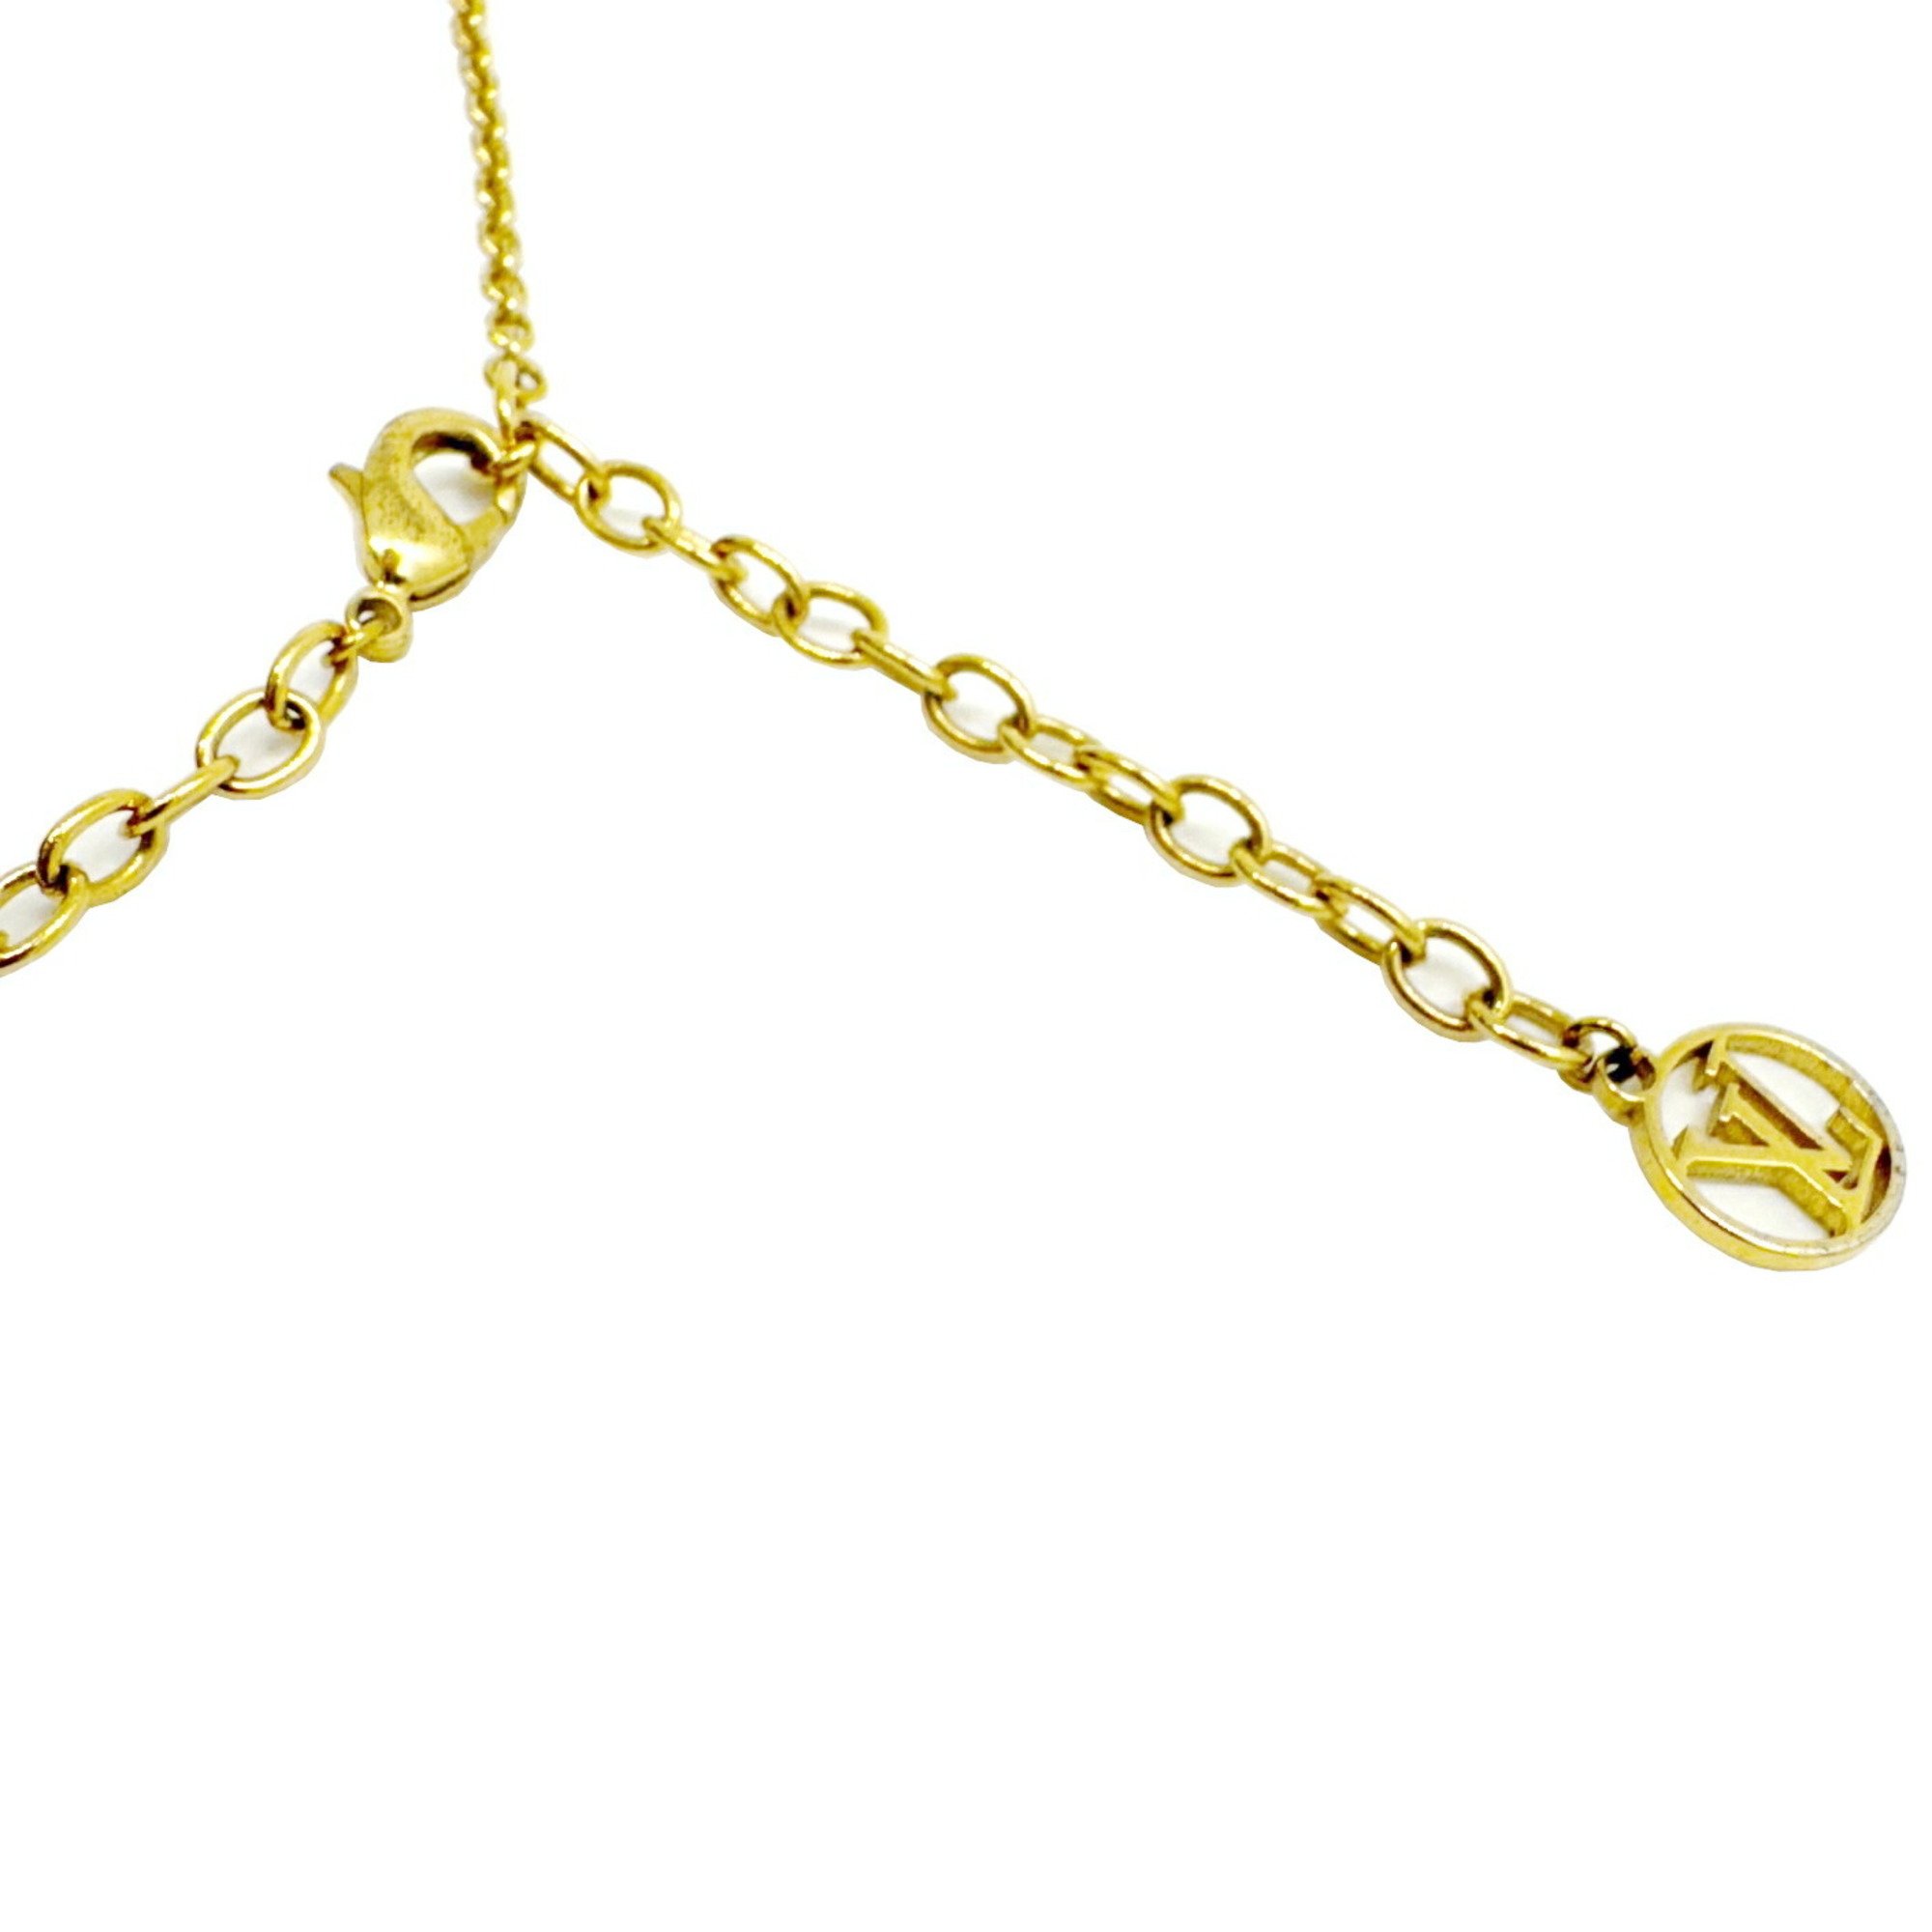 LOUIS VUITTON Louis Vuitton Collier Blooming Necklace Pendant Gold Color GP M64855 OB0118 Women's